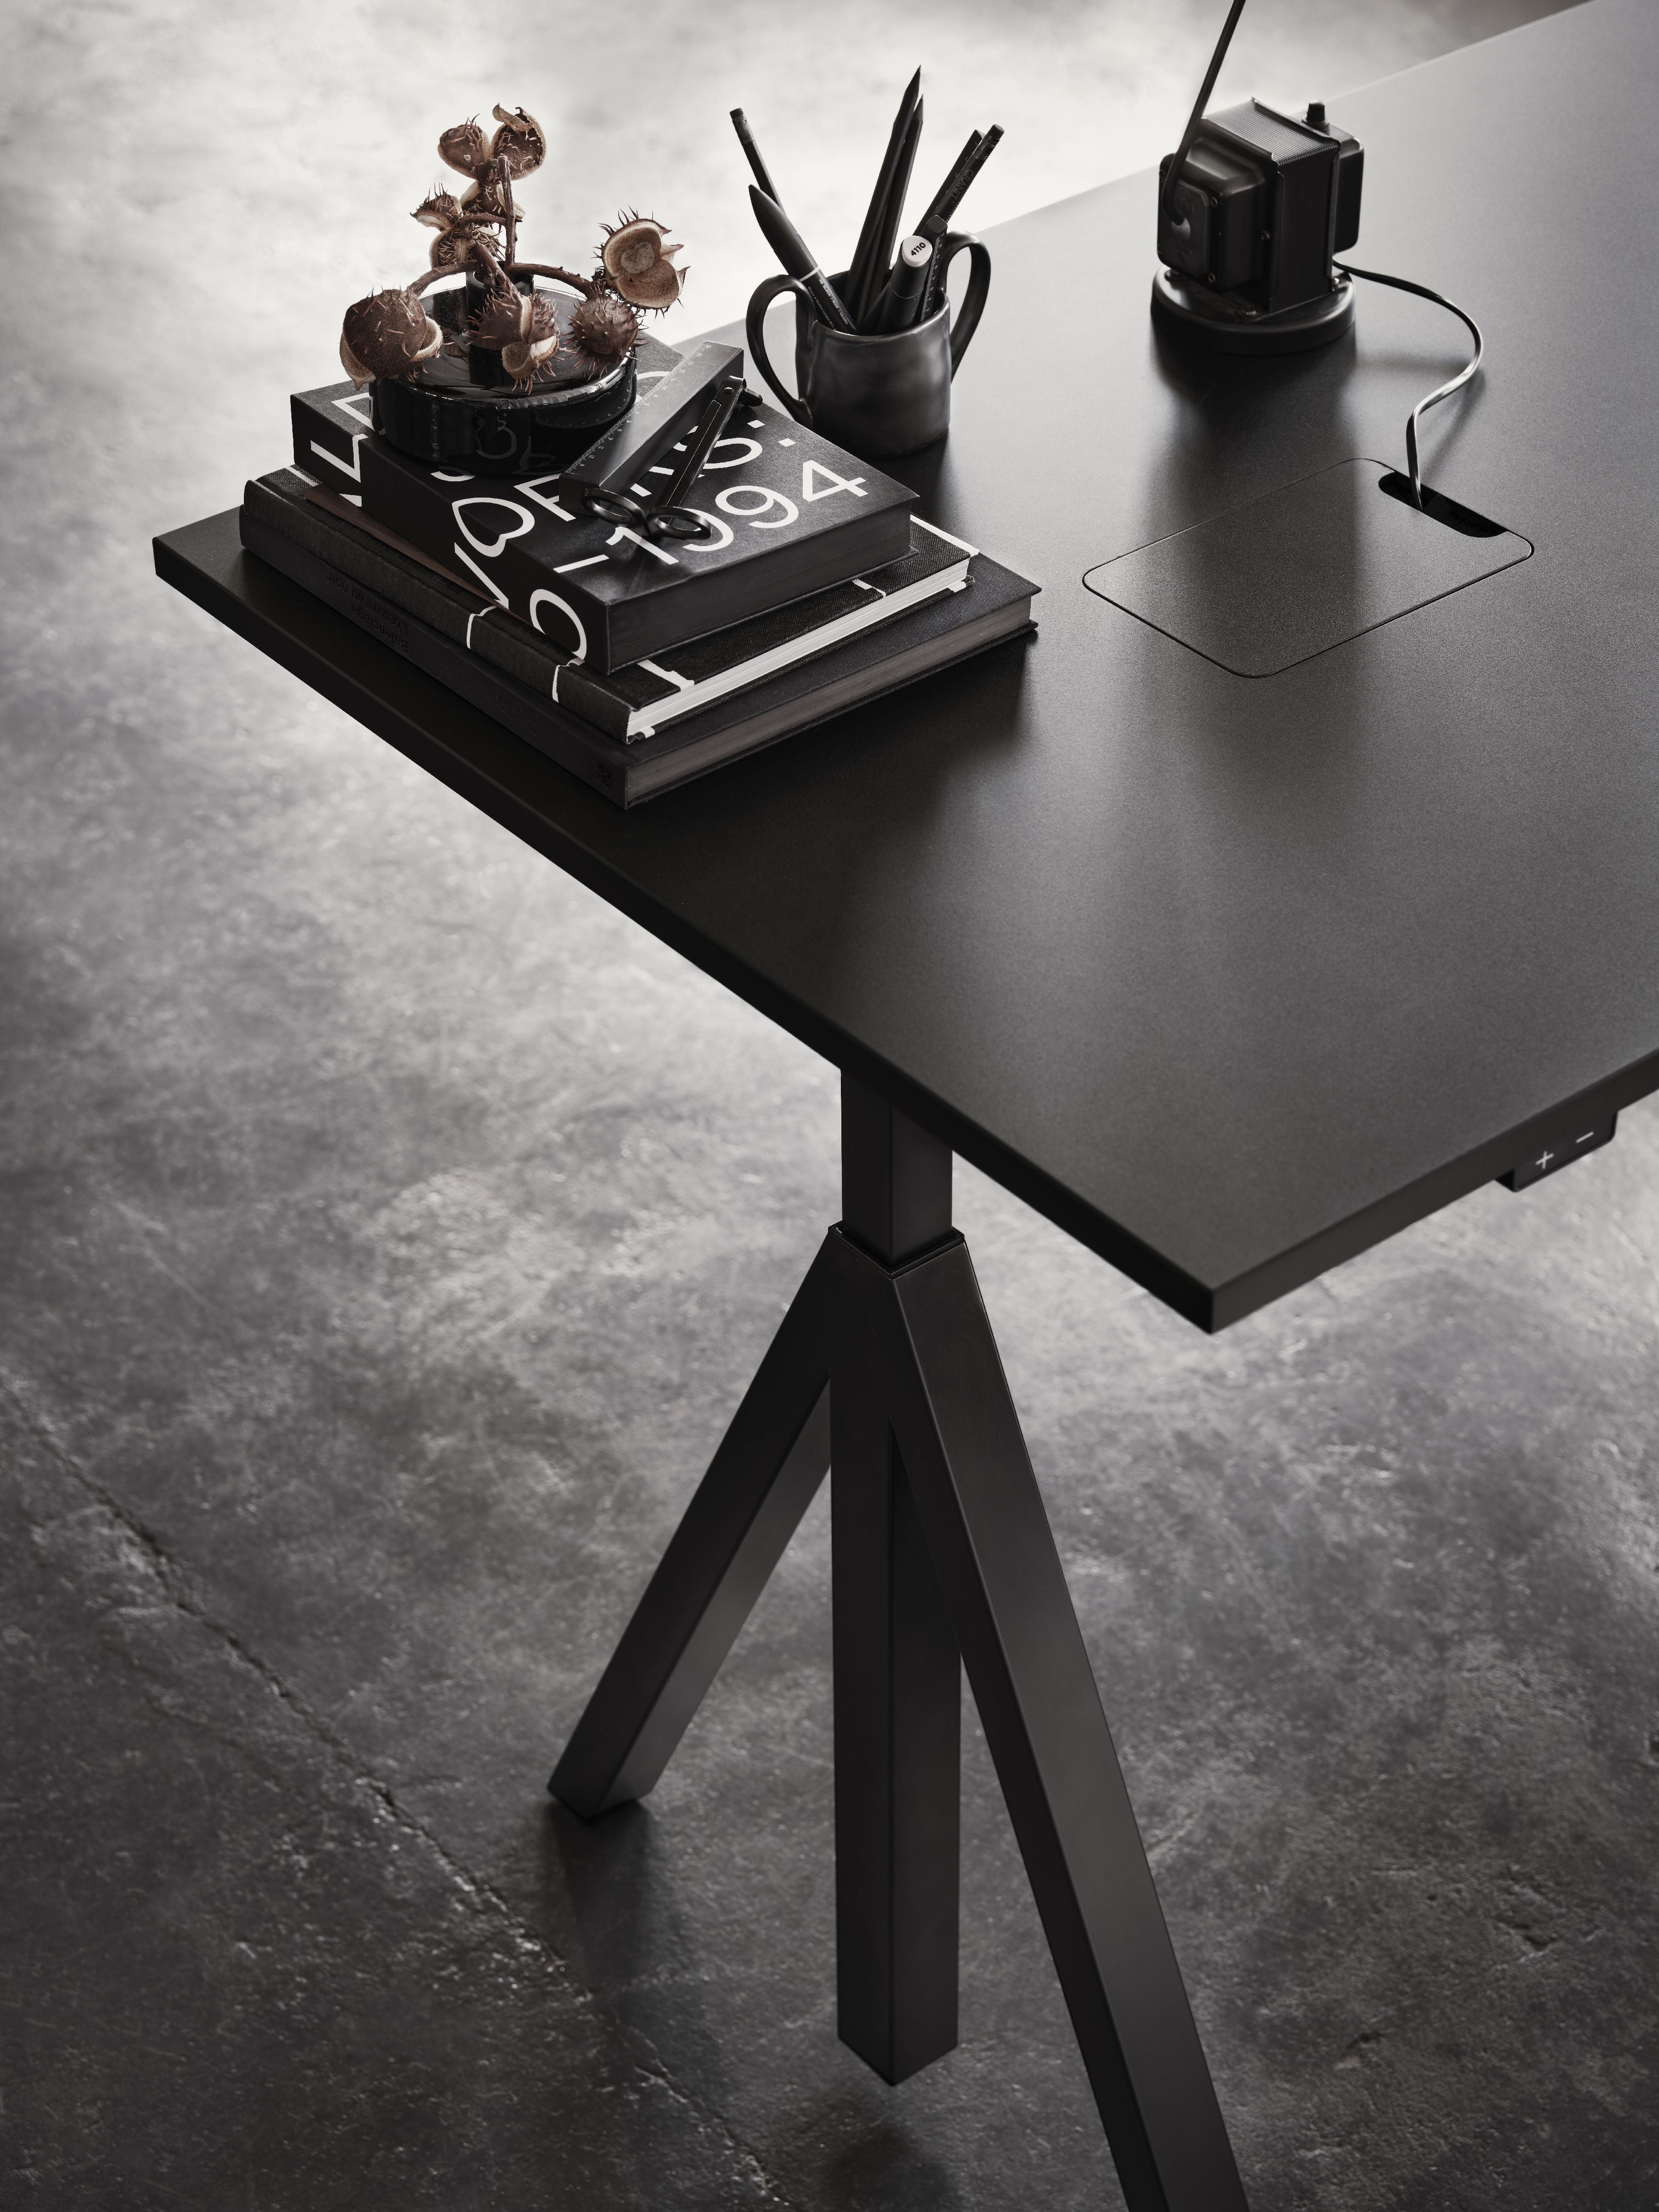 String nábytek Výška nastavitelná konferenční tabulka 90x180 cm, dub/černá